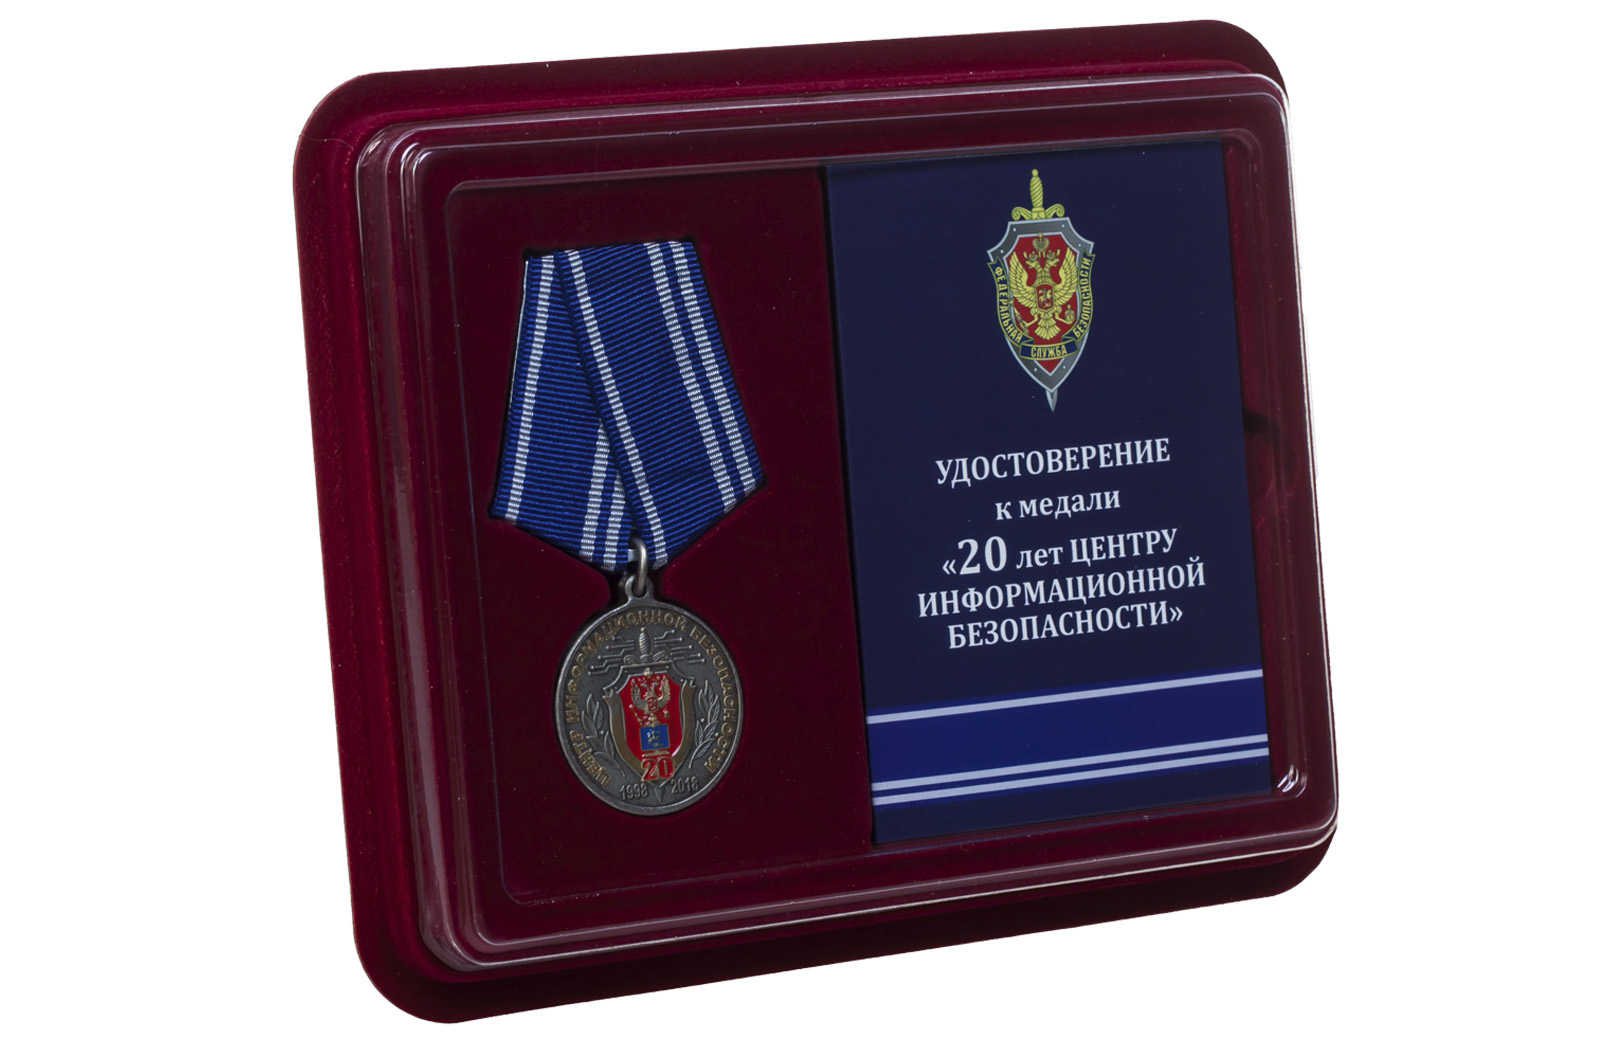 Купить медаль ФСБ России 20 лет Центру информационной безопасности с доставкой